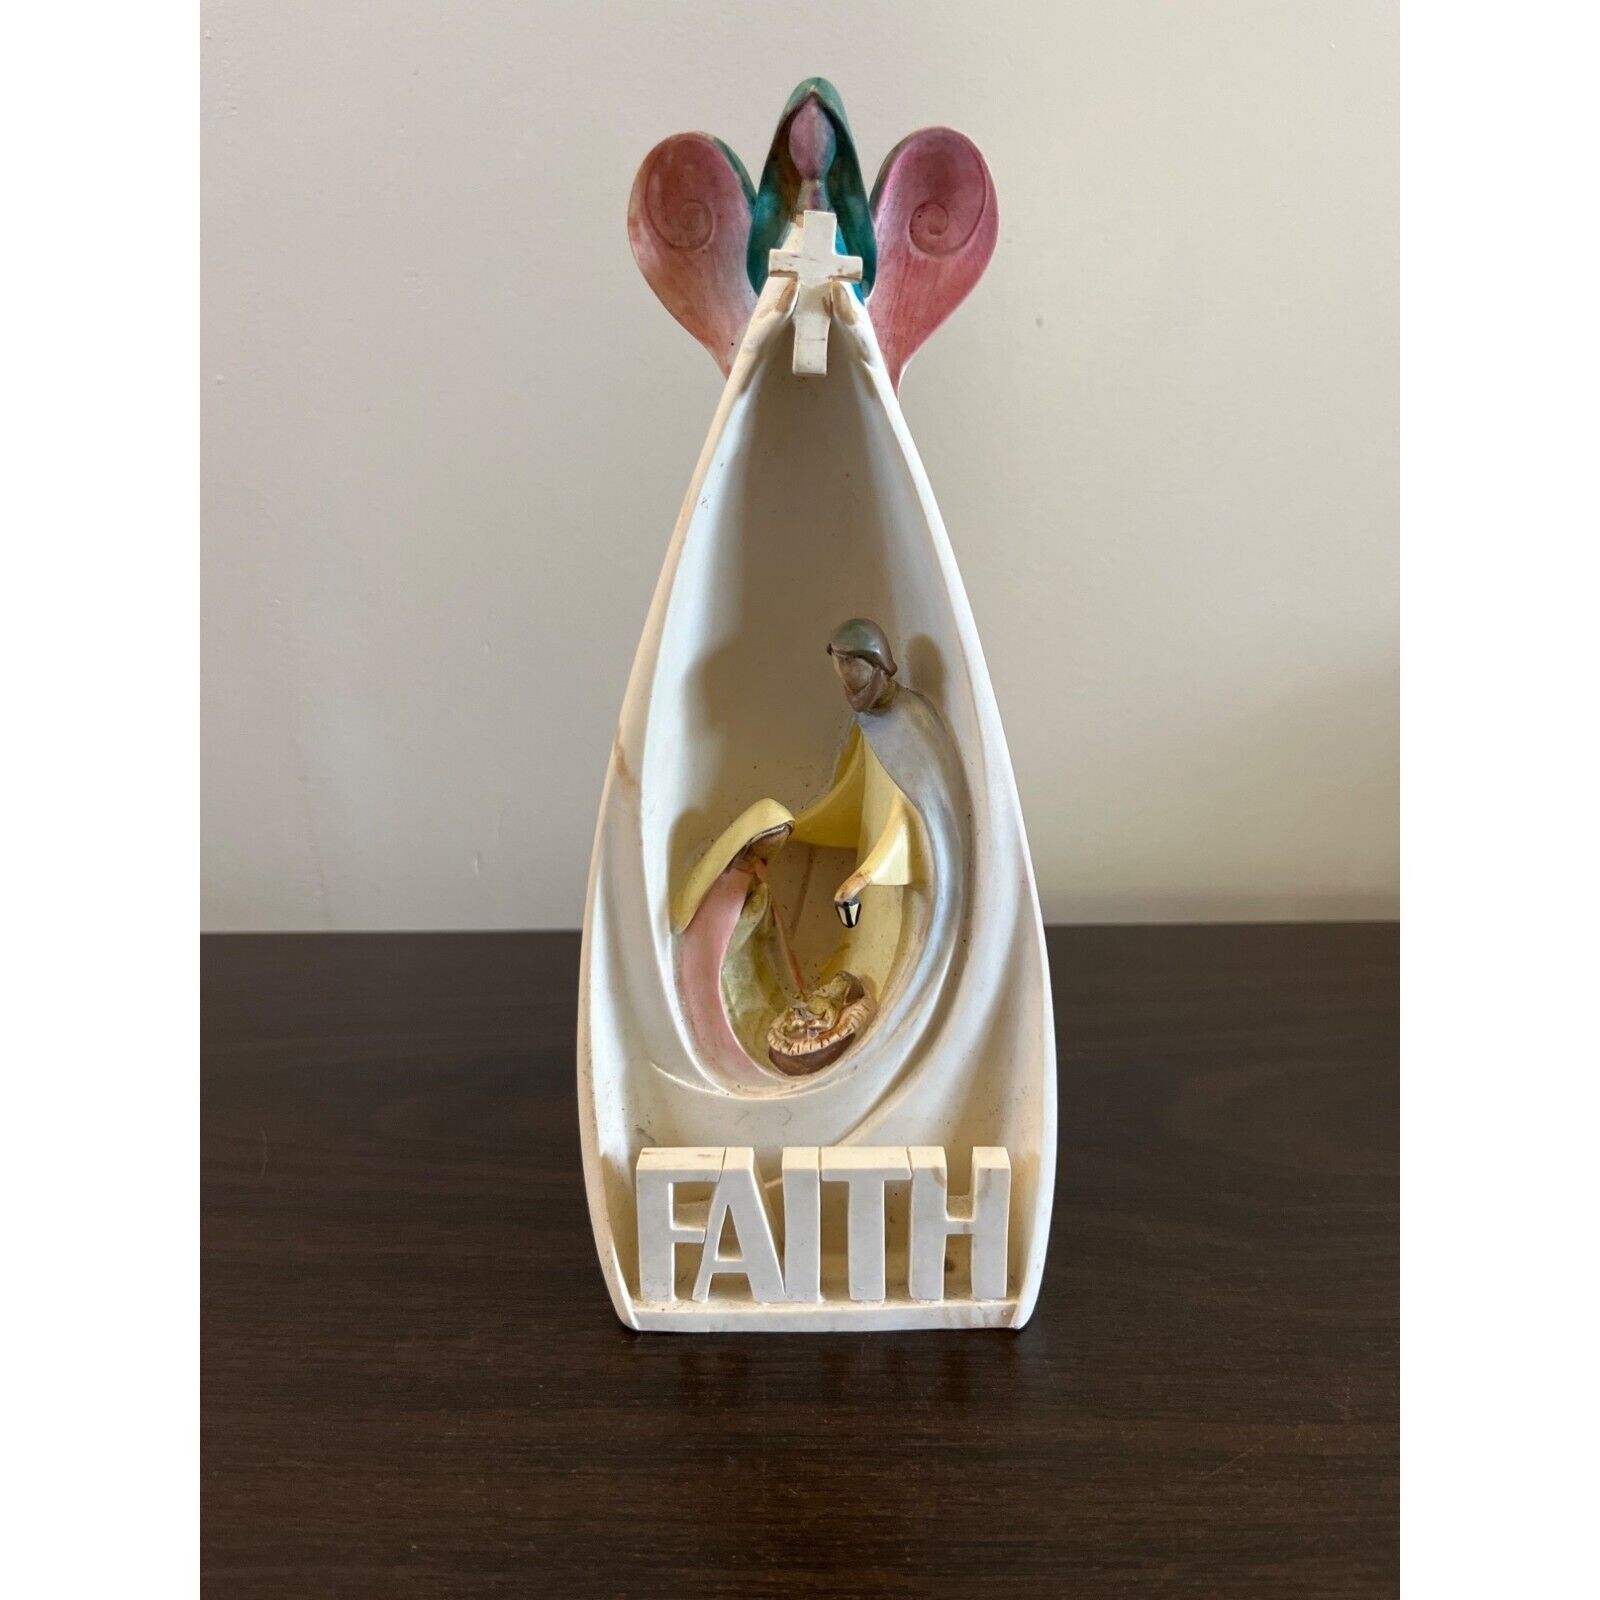 Christain Faith Jesus Mary Joesph Faith Angel Manger Religious Figurine Decor